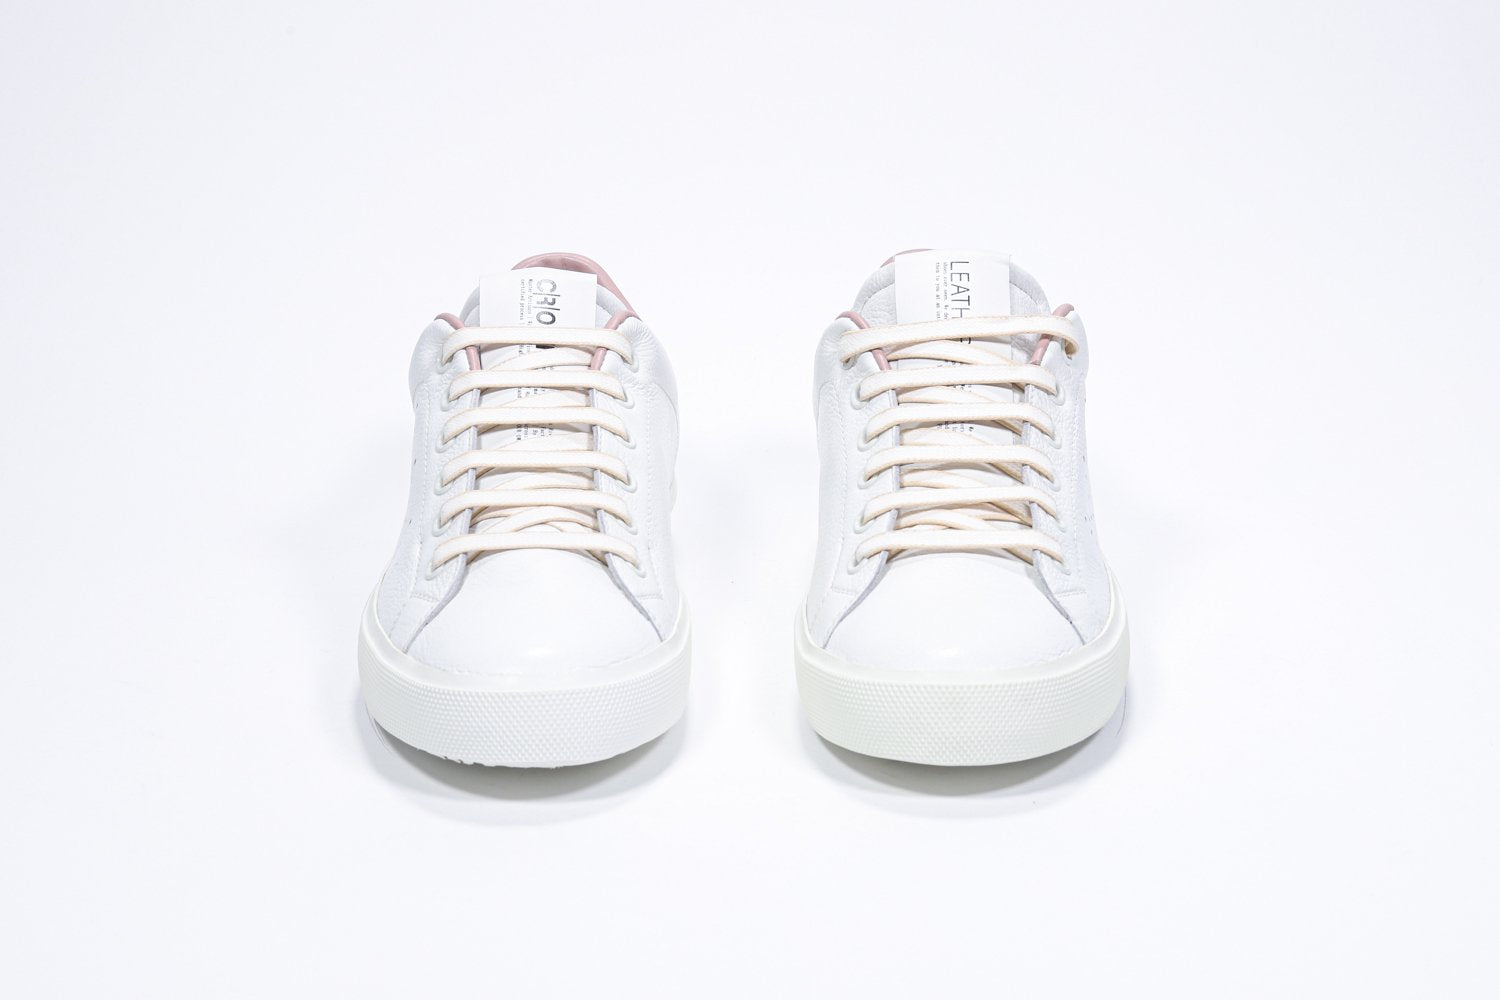 Vista frontale di BASSE  sneaker  bianco con dettagli rosa pallido e logo della corona traforato sulla tomaia. Tomaia in pelle e suola in gomma bianca.